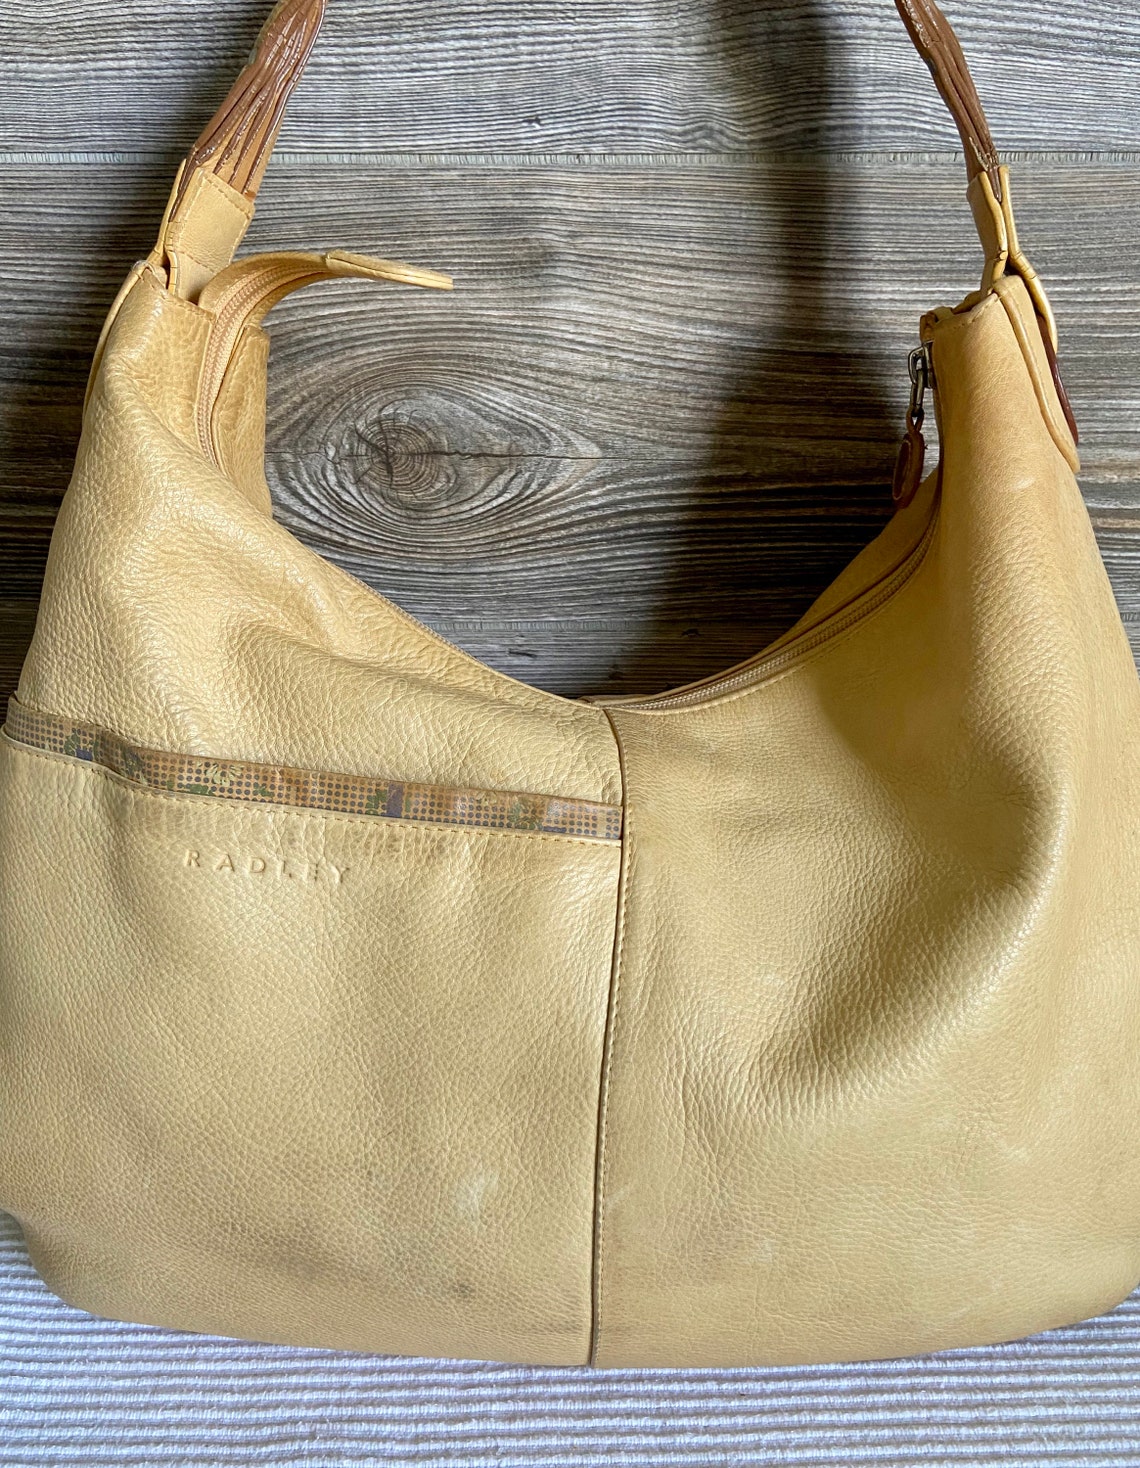 Vintage Radley Beige Leather Hobo Shoulder Bag | Etsy